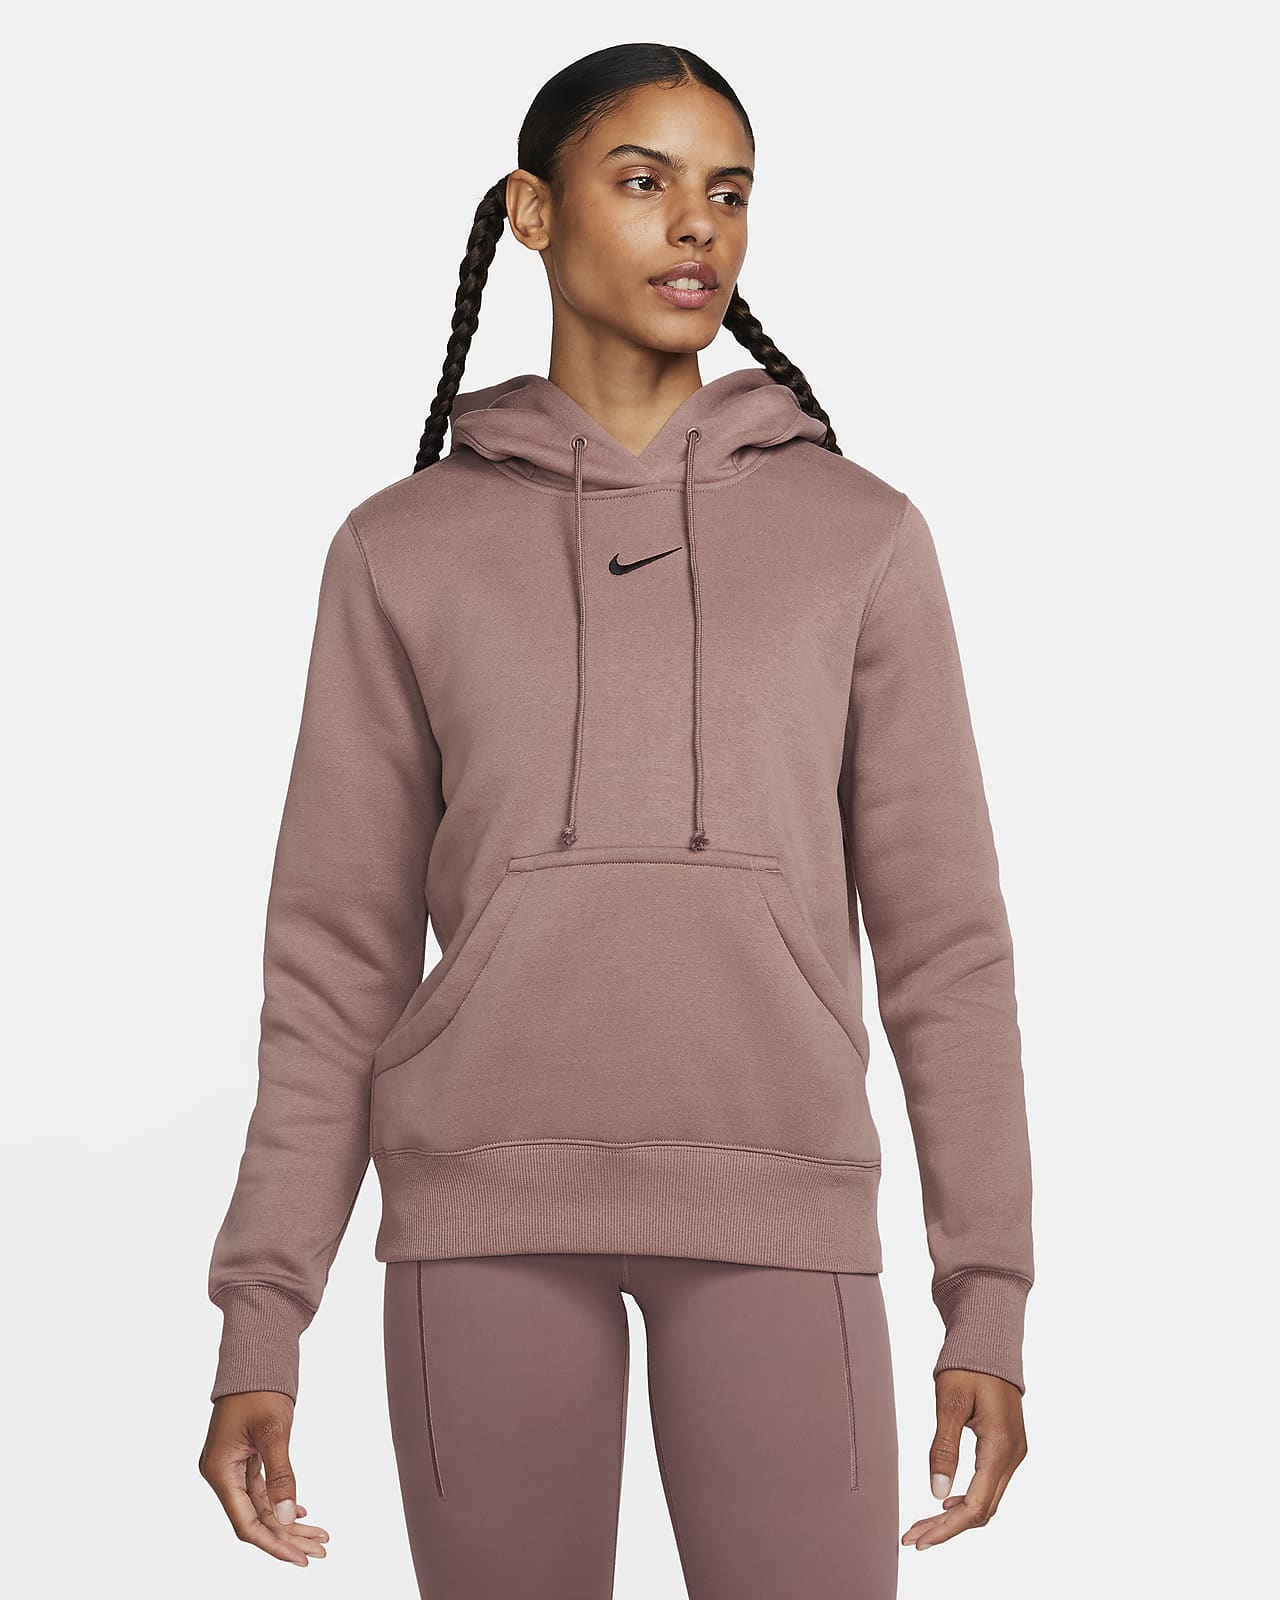 Nike Sportswear Phoenix Fleece LAvender Crewneck Sweatshirt